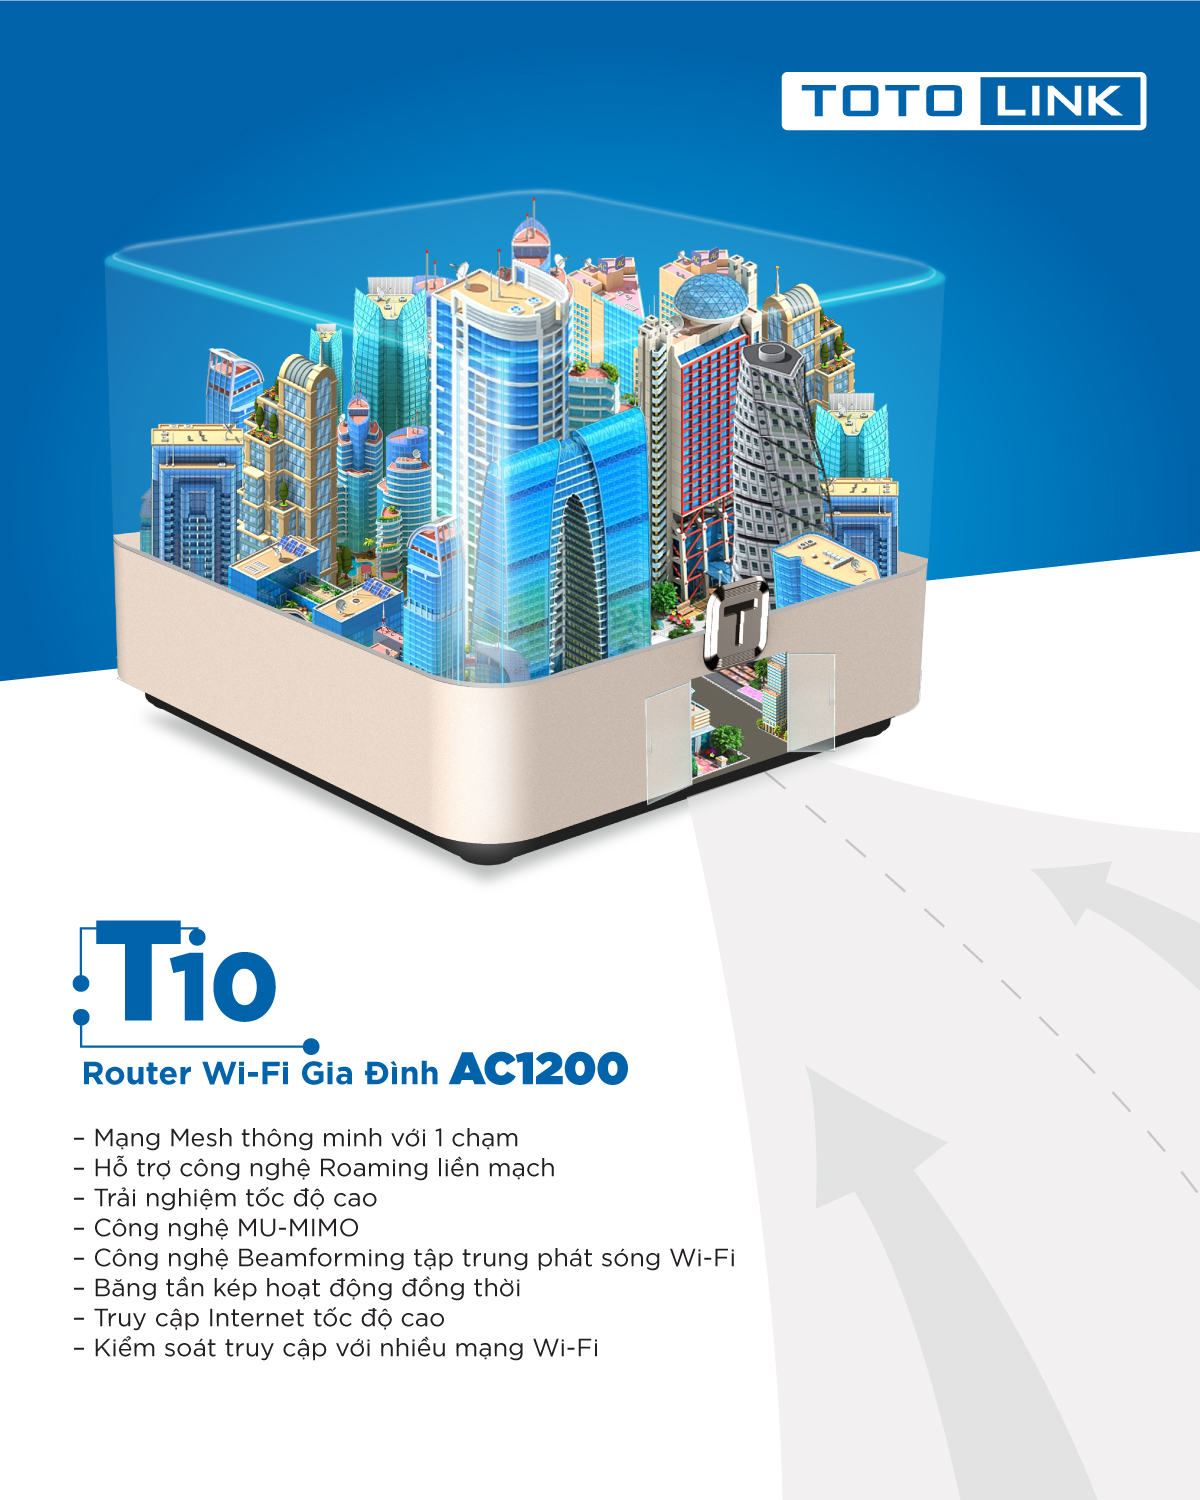 Bộ Phát Wi-Fi Dạng Lưới - Công Nghệ Mesh TOTOLINK T10 - AC1200 - Hàng Chính Hãng